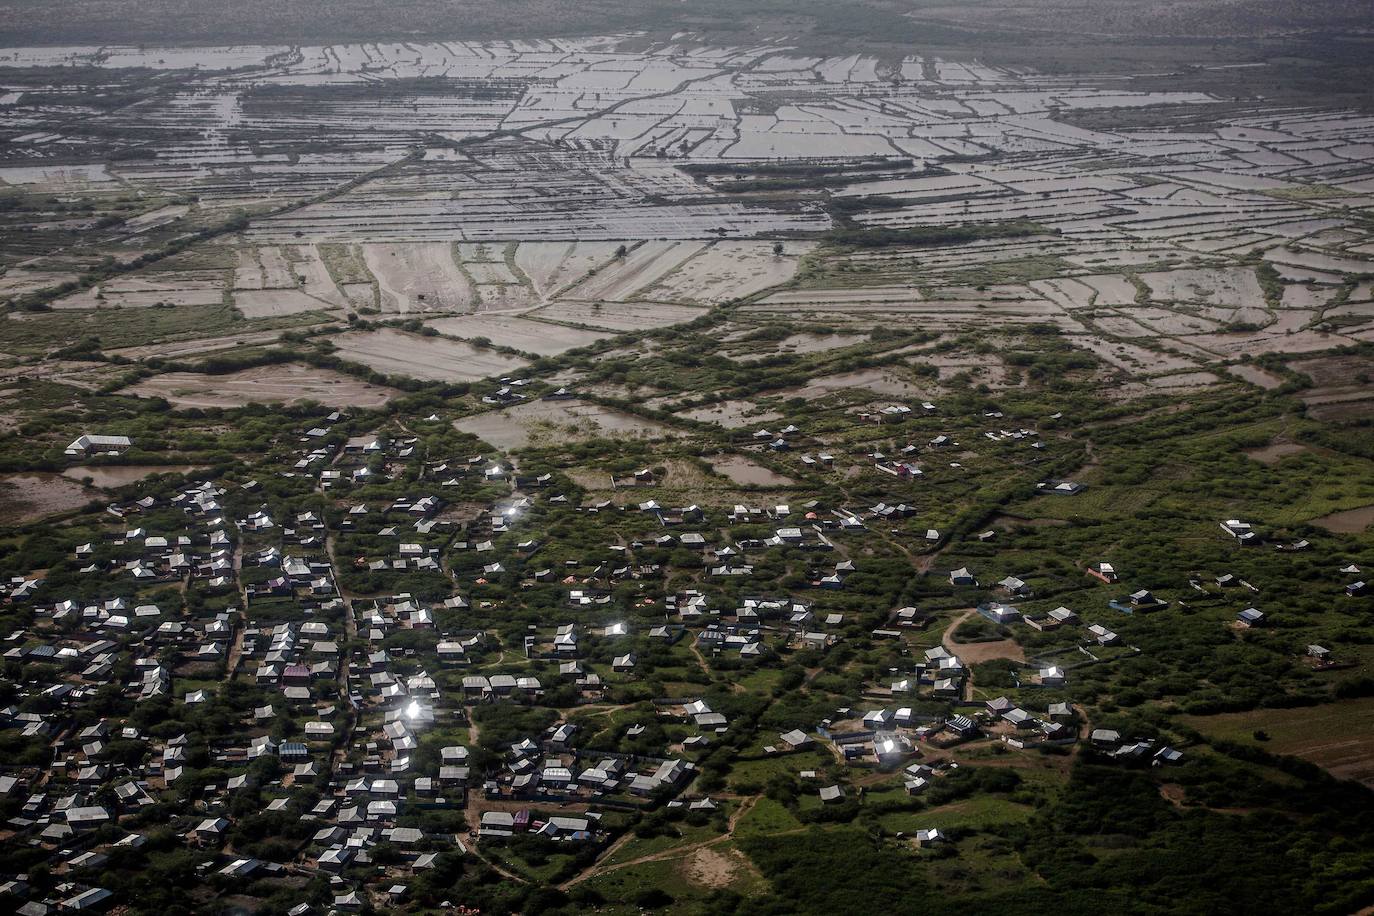 Áreas residenciales y campos agrícolas, inundados en las afueras de Beledweyne, Somalia, el 14 de diciembre de 2019. Debido al cambio climático y las actividades humanas, los ciclos de inundaciones y sequías se han vuelto más recurrentes y completamente impredecibles en el país, exponiendo a cientos de miles de personas cada año a la vulnerabilidad y el desplazamiento.